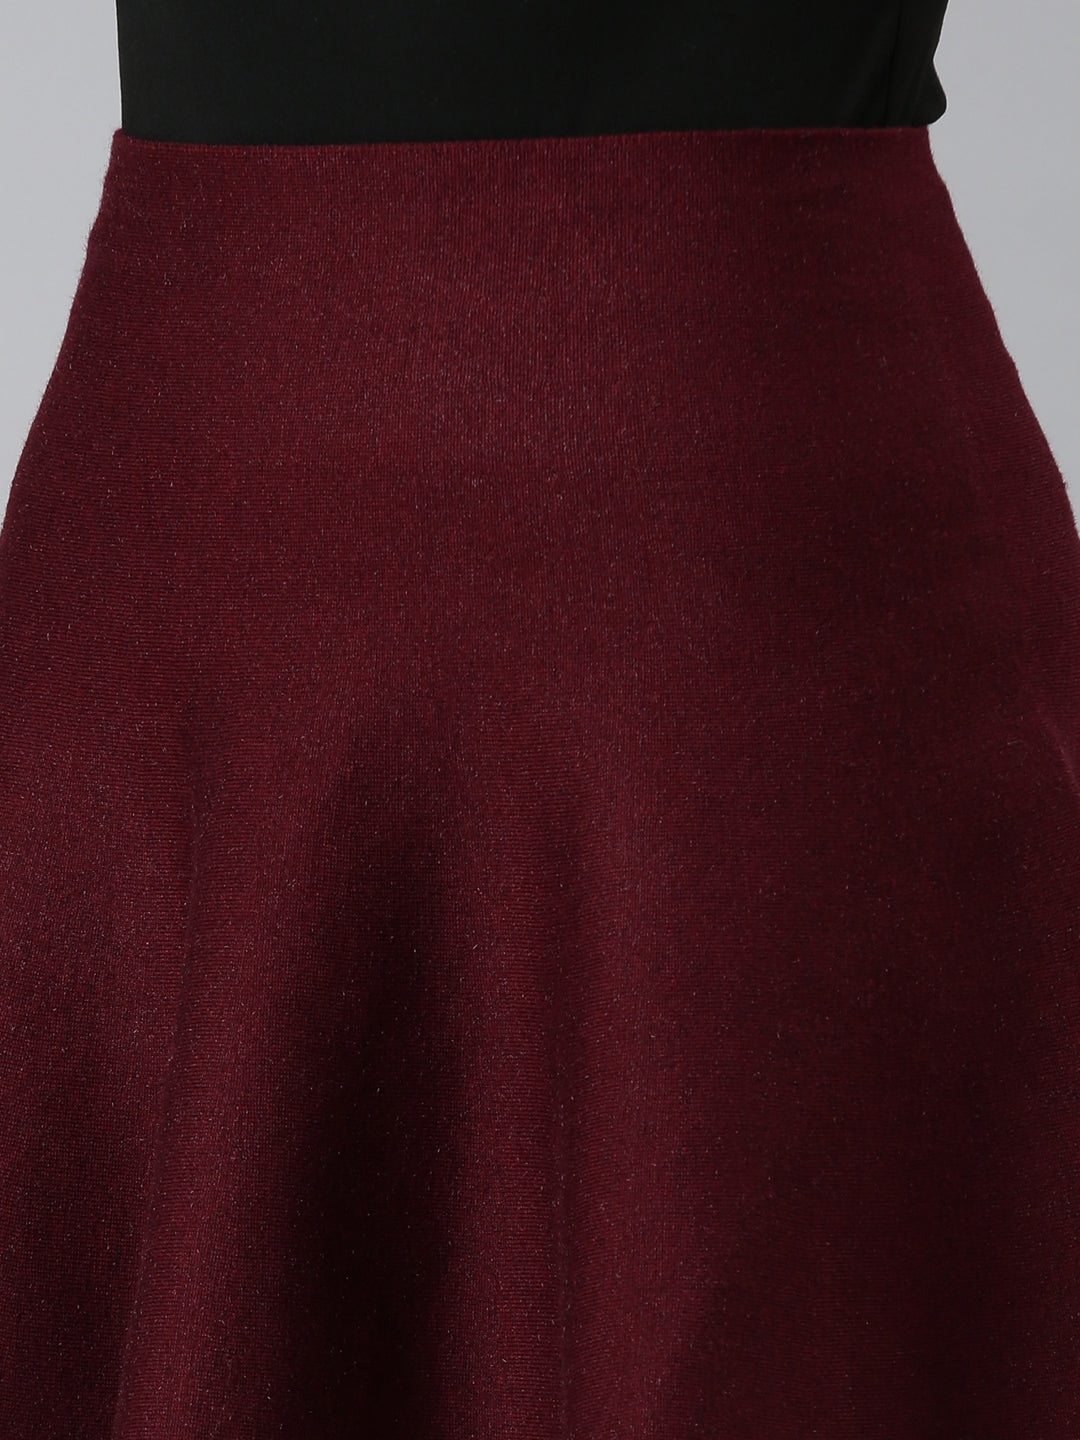 Women Burgundy Solid Flared Skirt